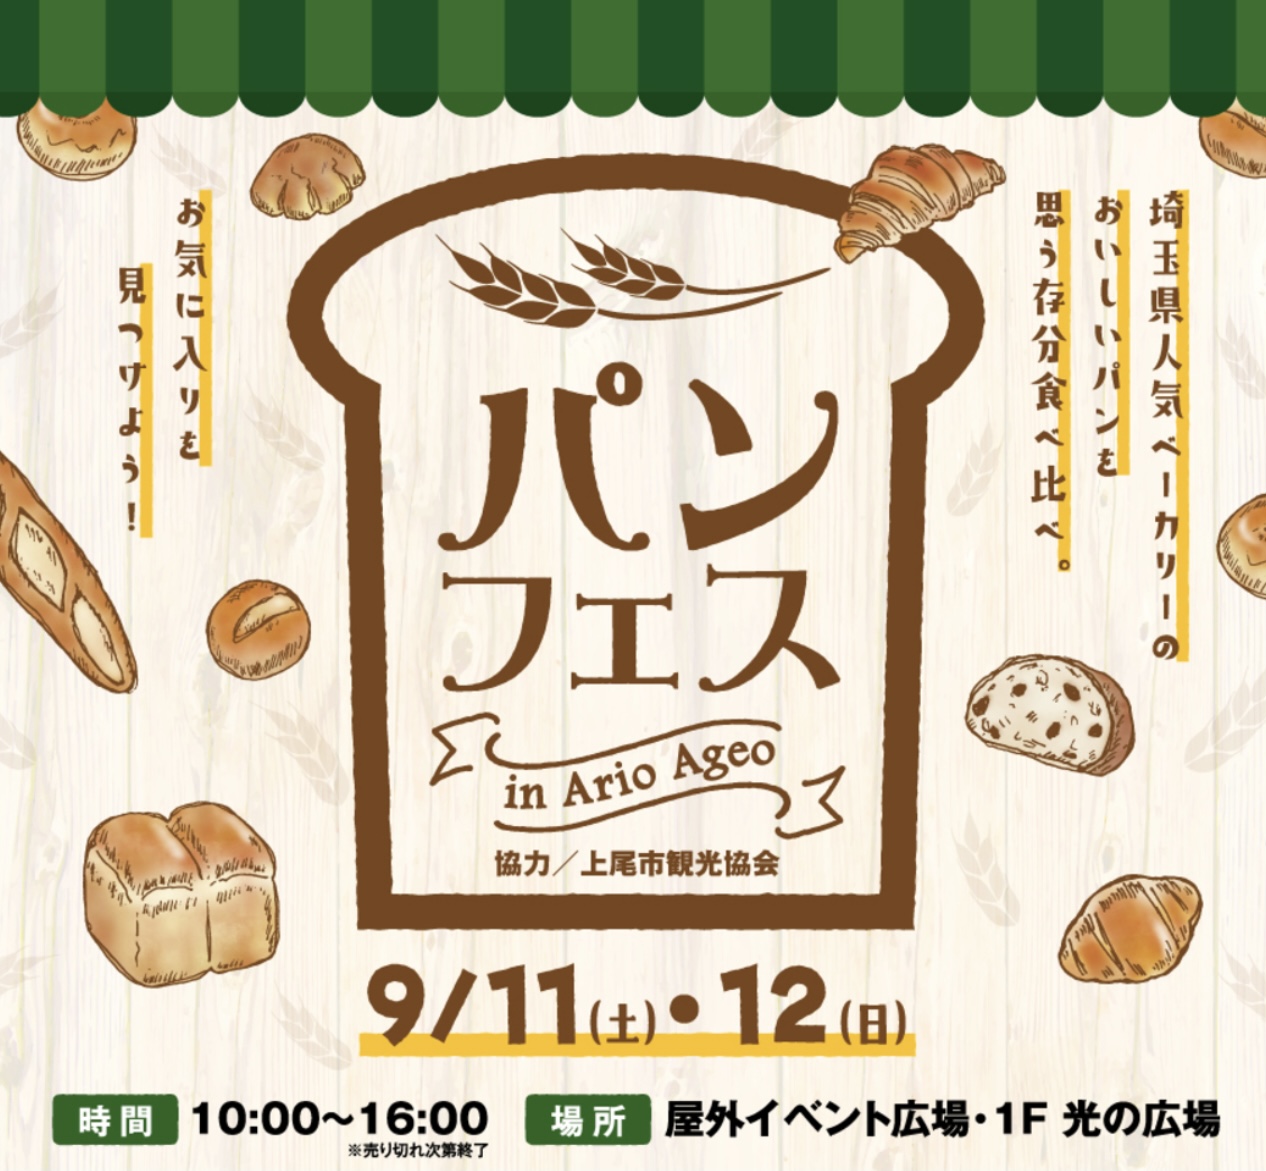 埼玉県の人気ベーカリーが大集合！2021年9月11日から9月12日『アリオ上尾』で『パンフェス』開催します。